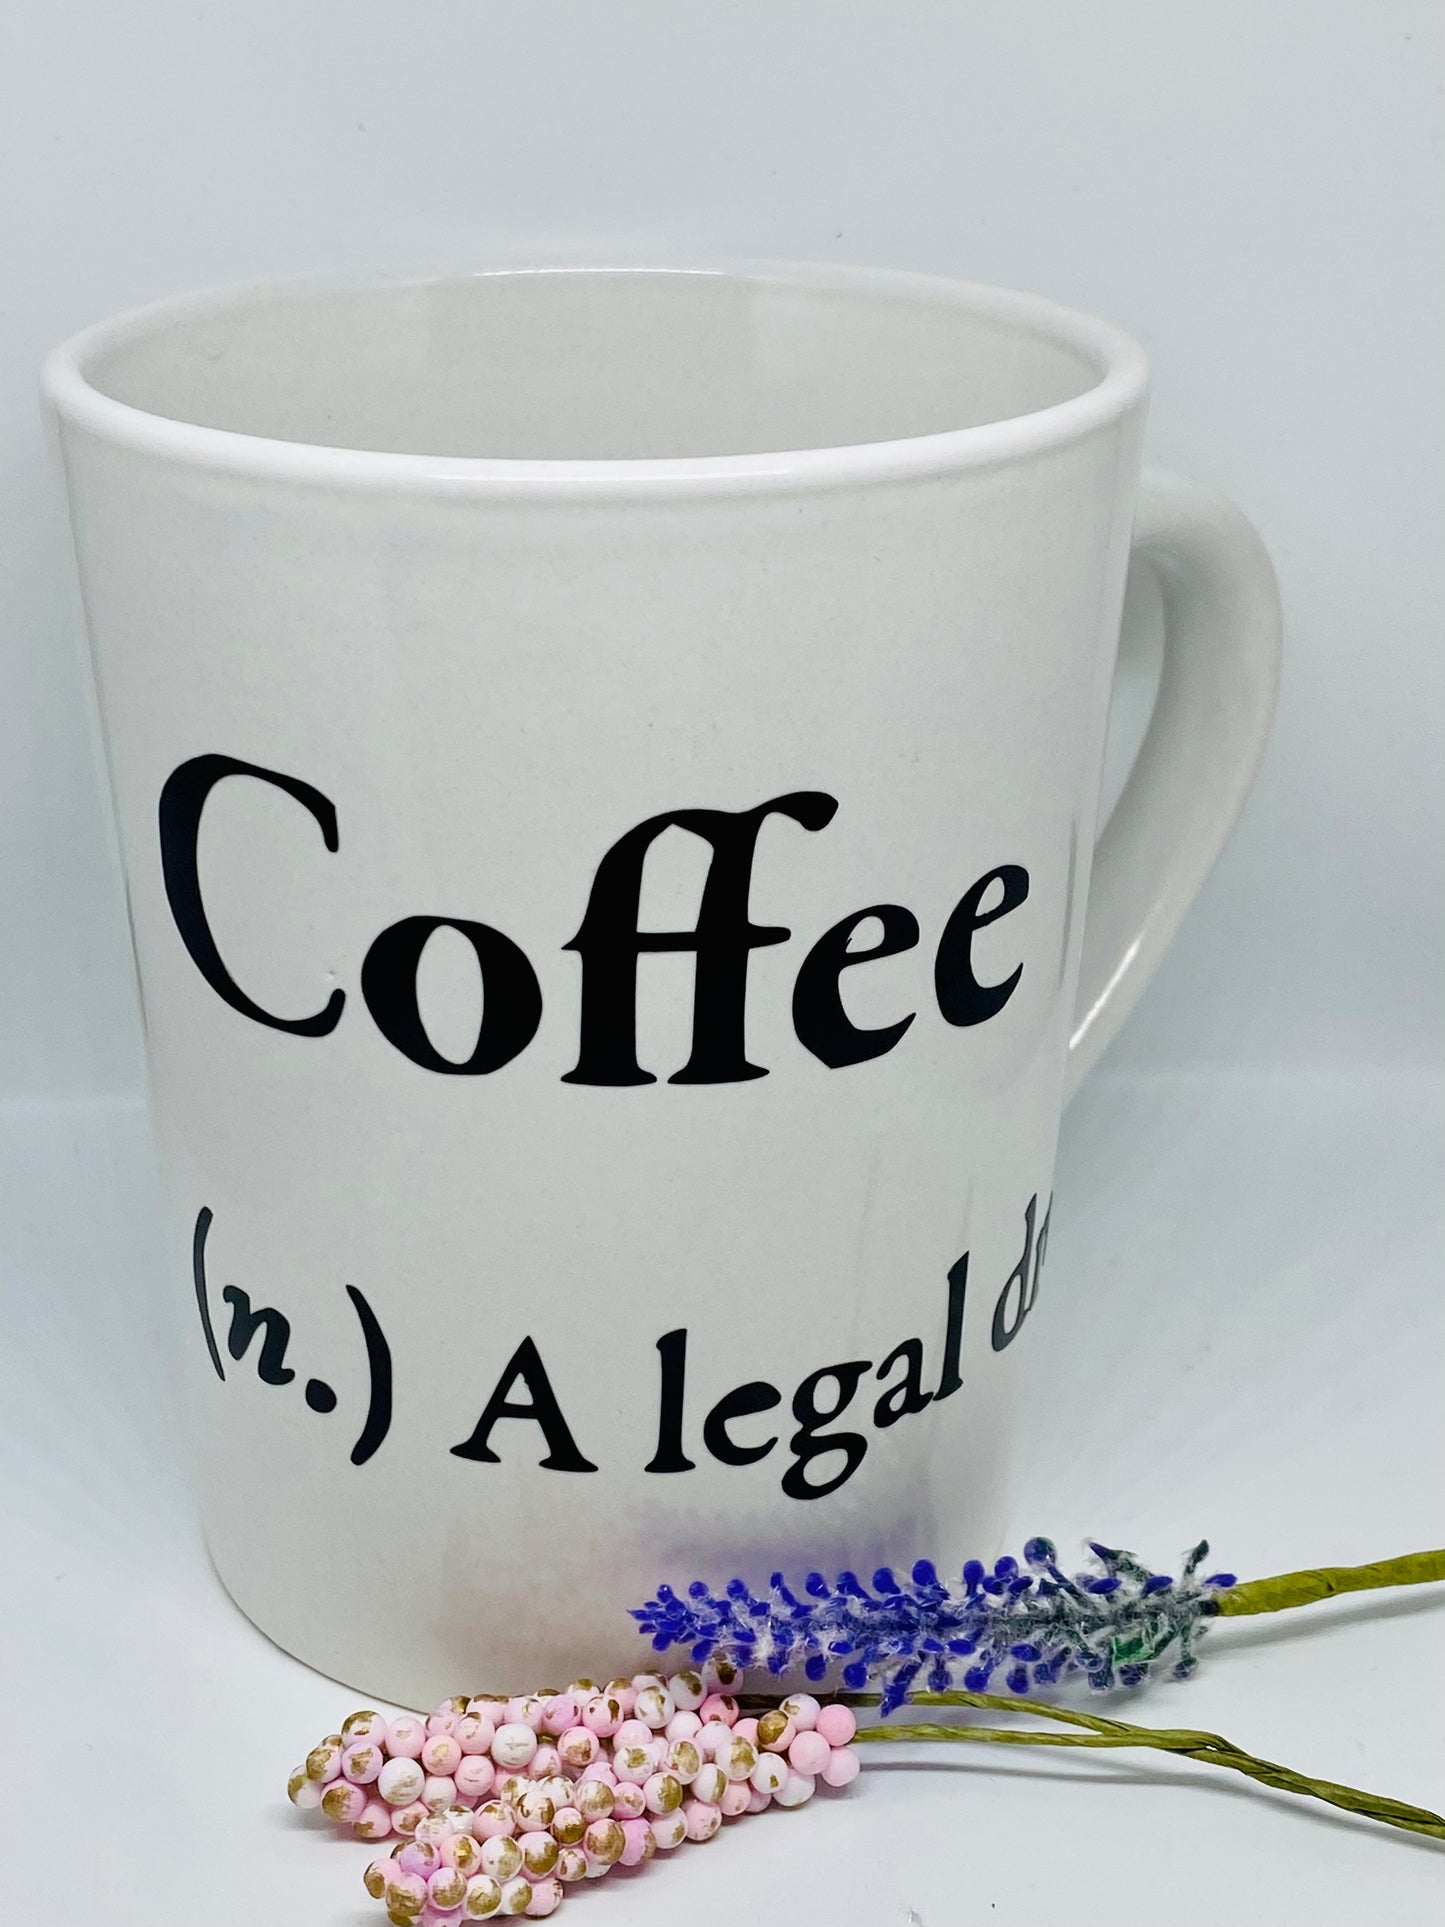 Coffee, a legal